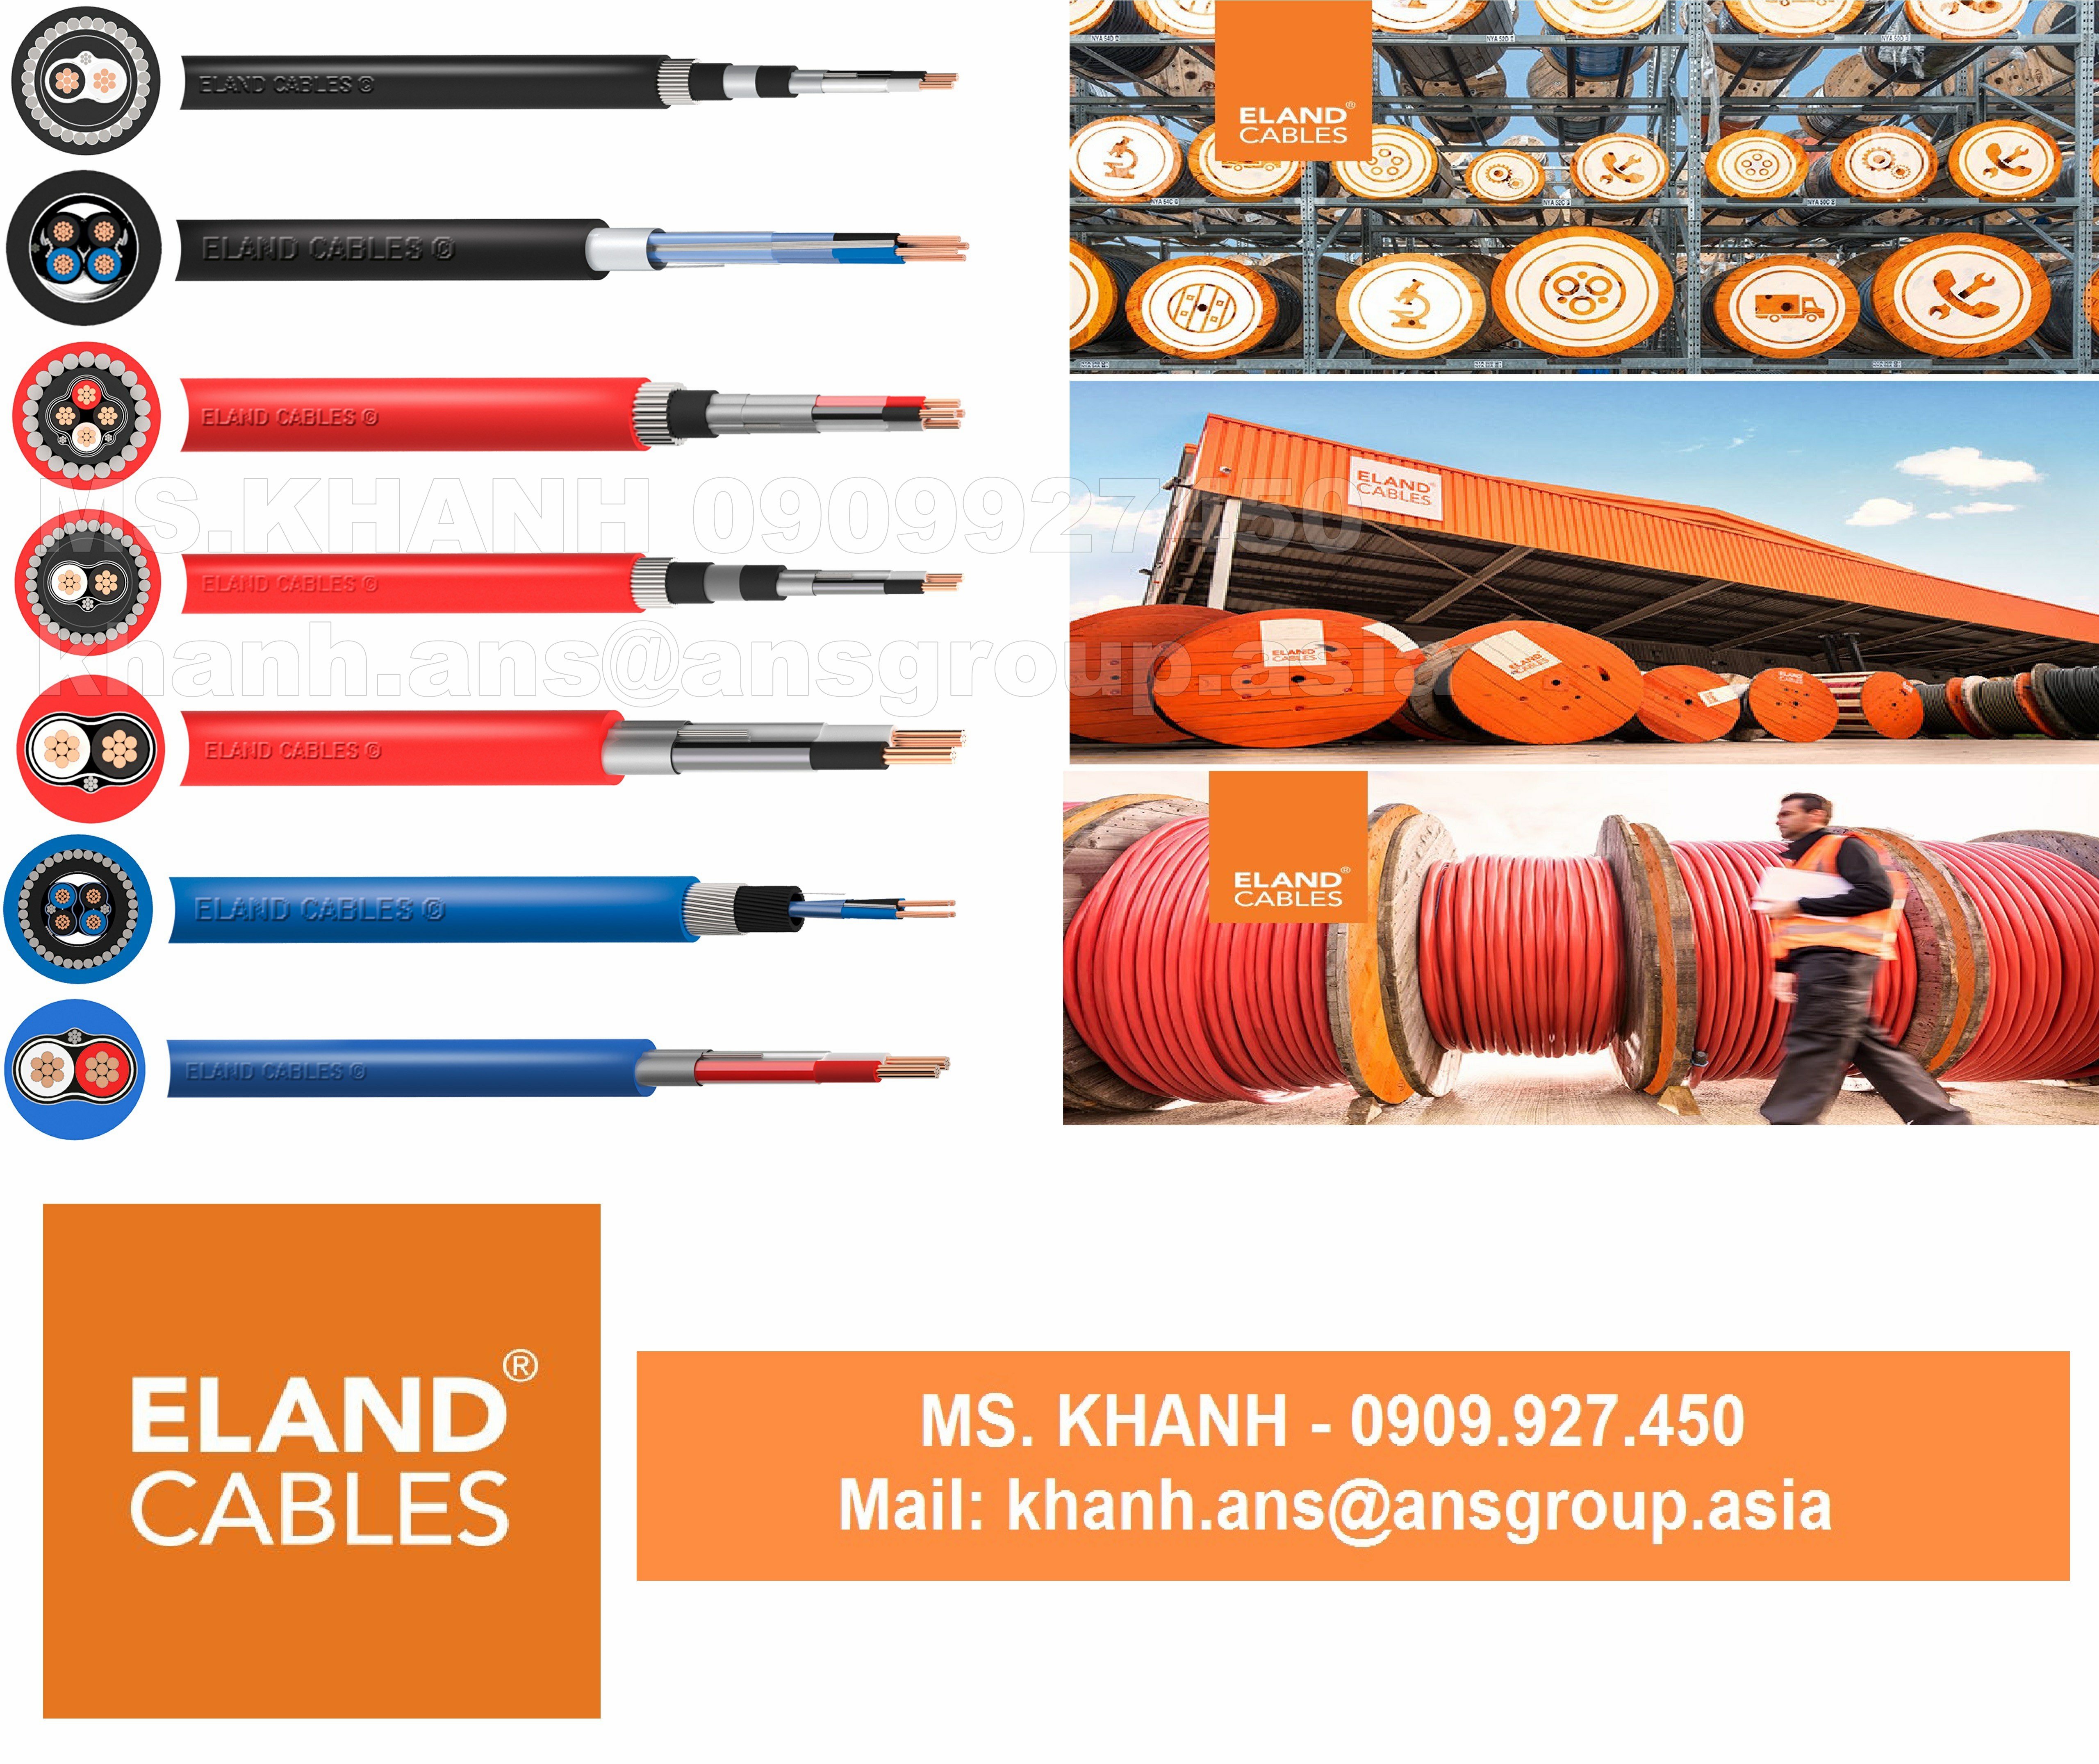 cap-ashn006-cable-eland-cable-vietnam-2.png